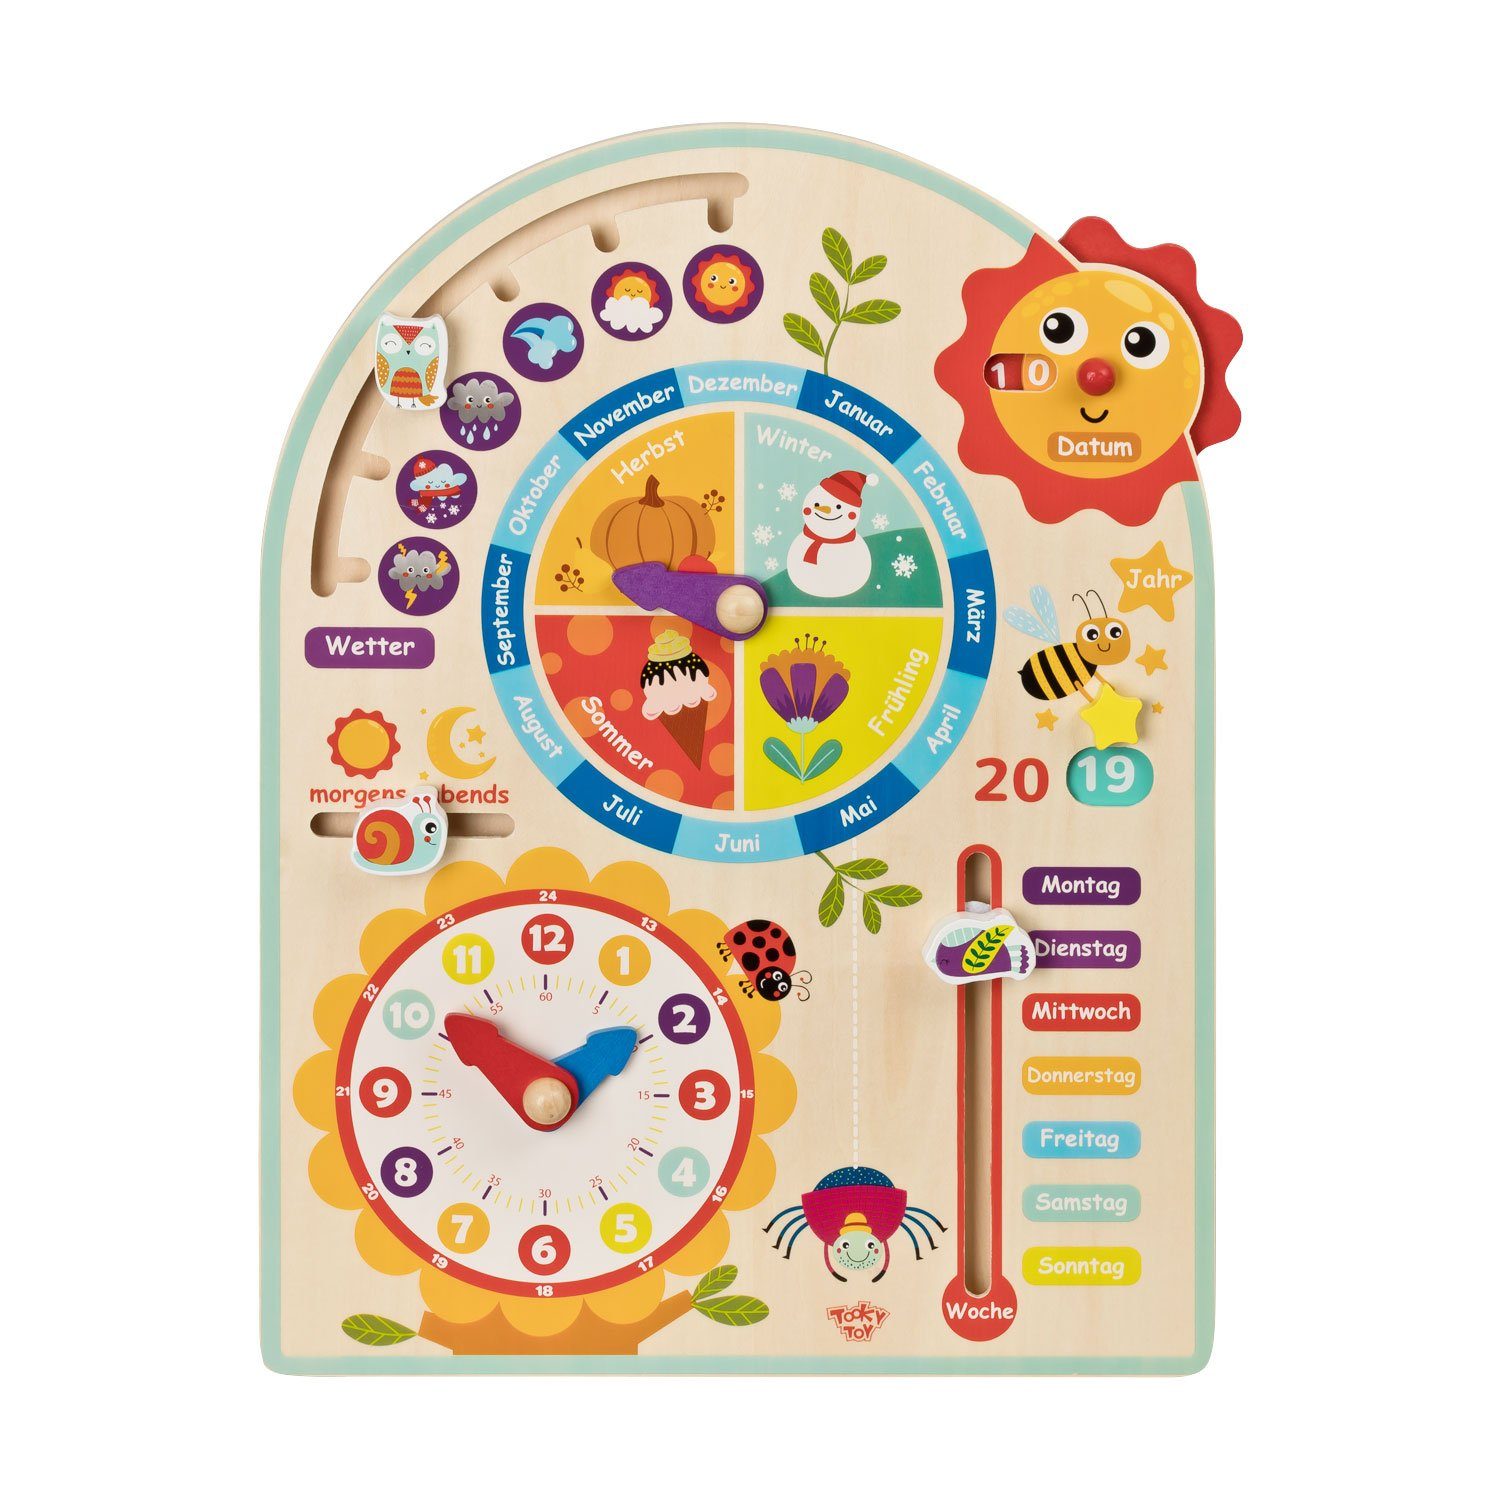 Puzzle Tooky Toy Kalenderuhr Jahresuhr - Kinder-Spielzeug Holz-Spielzeug Lern-Spielzeug, Puzzleteile